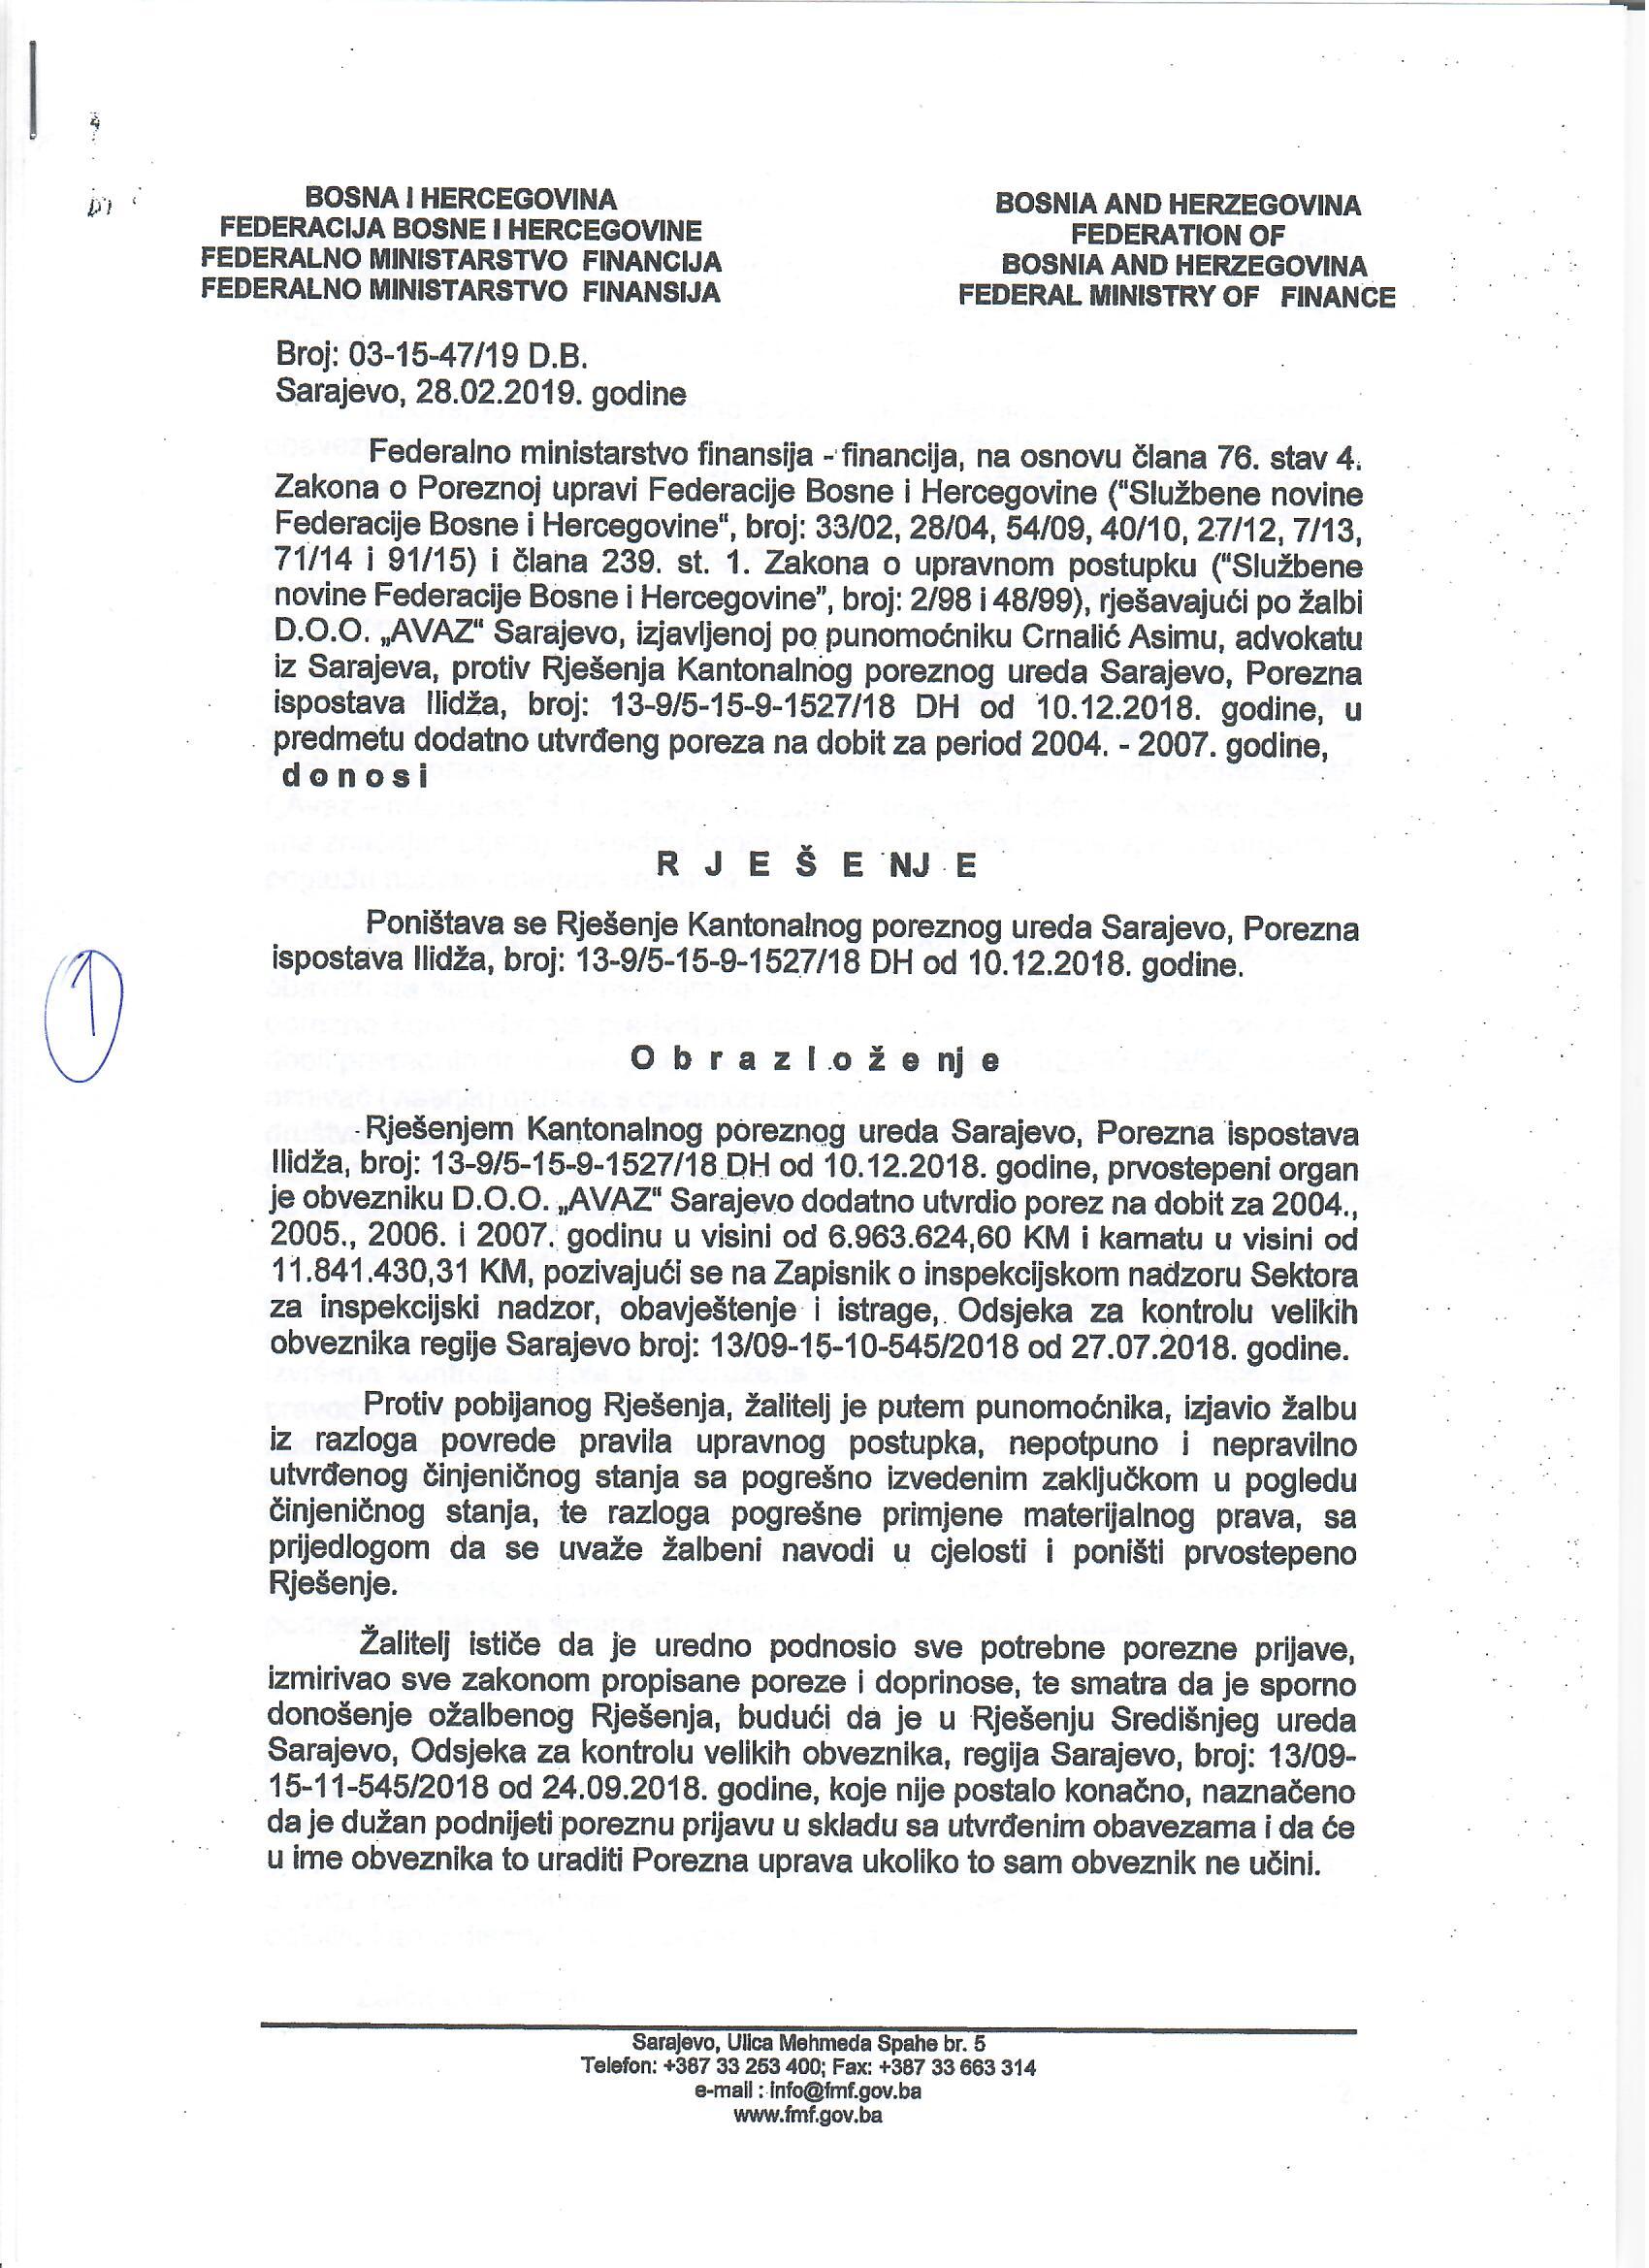 Rješenje Federalnog ministarstva financija-finansija o poništenju Rješenja Kantonalnog poreznog ureda Sarajevo - Avaz